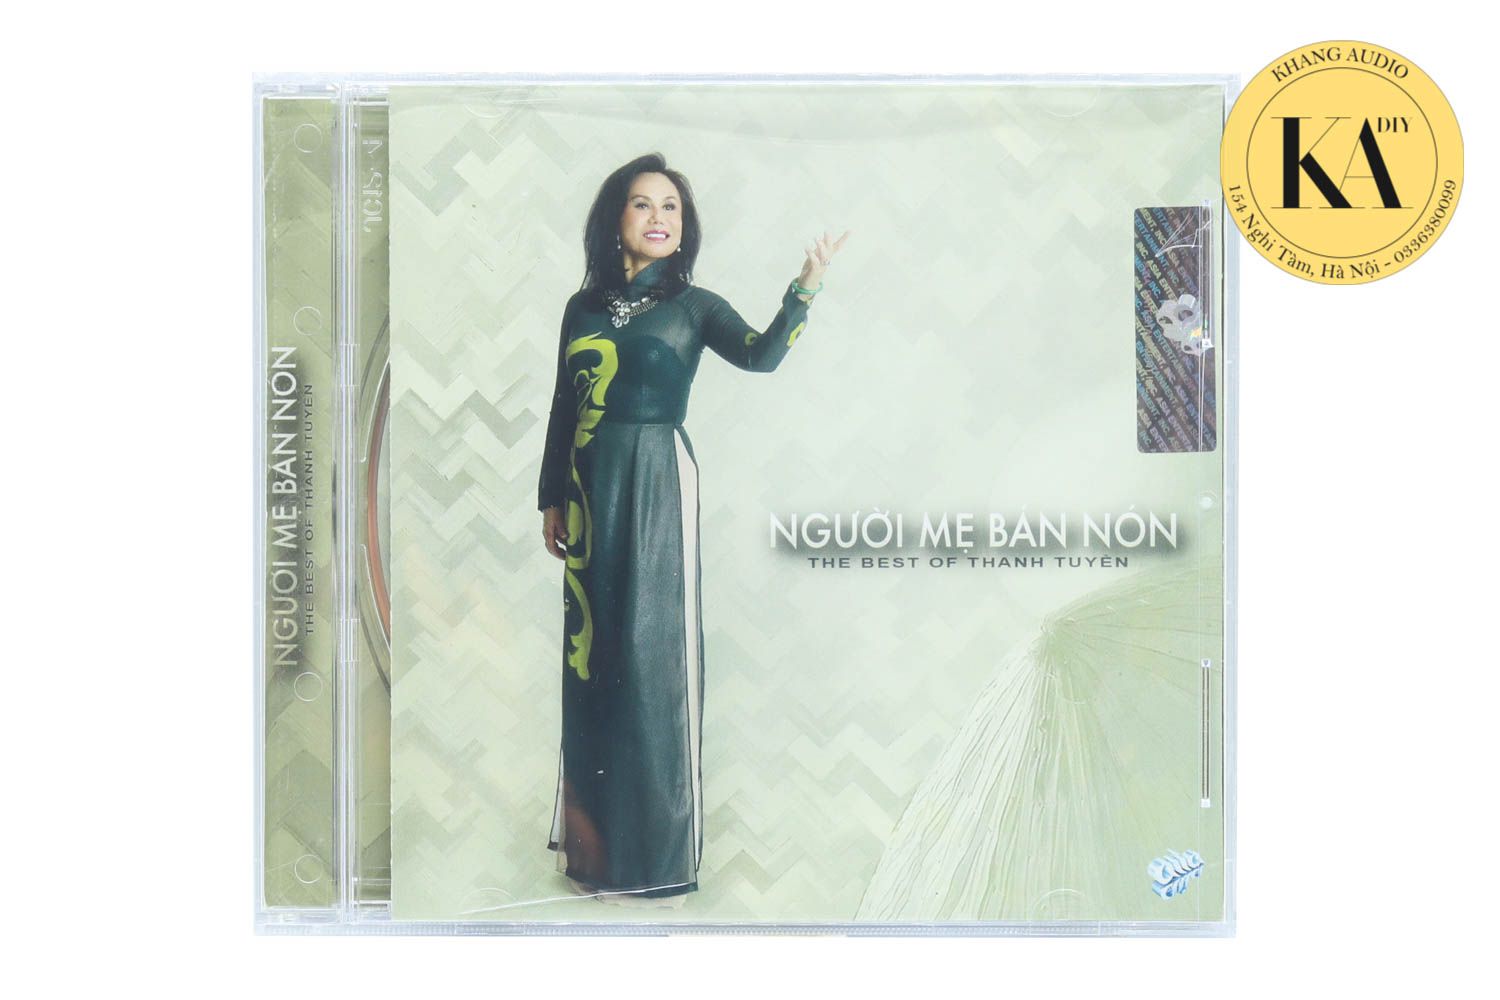 The Best Of Thanh Tuyền - Người Mẹ Bán Nón Khang Audio 0336380099